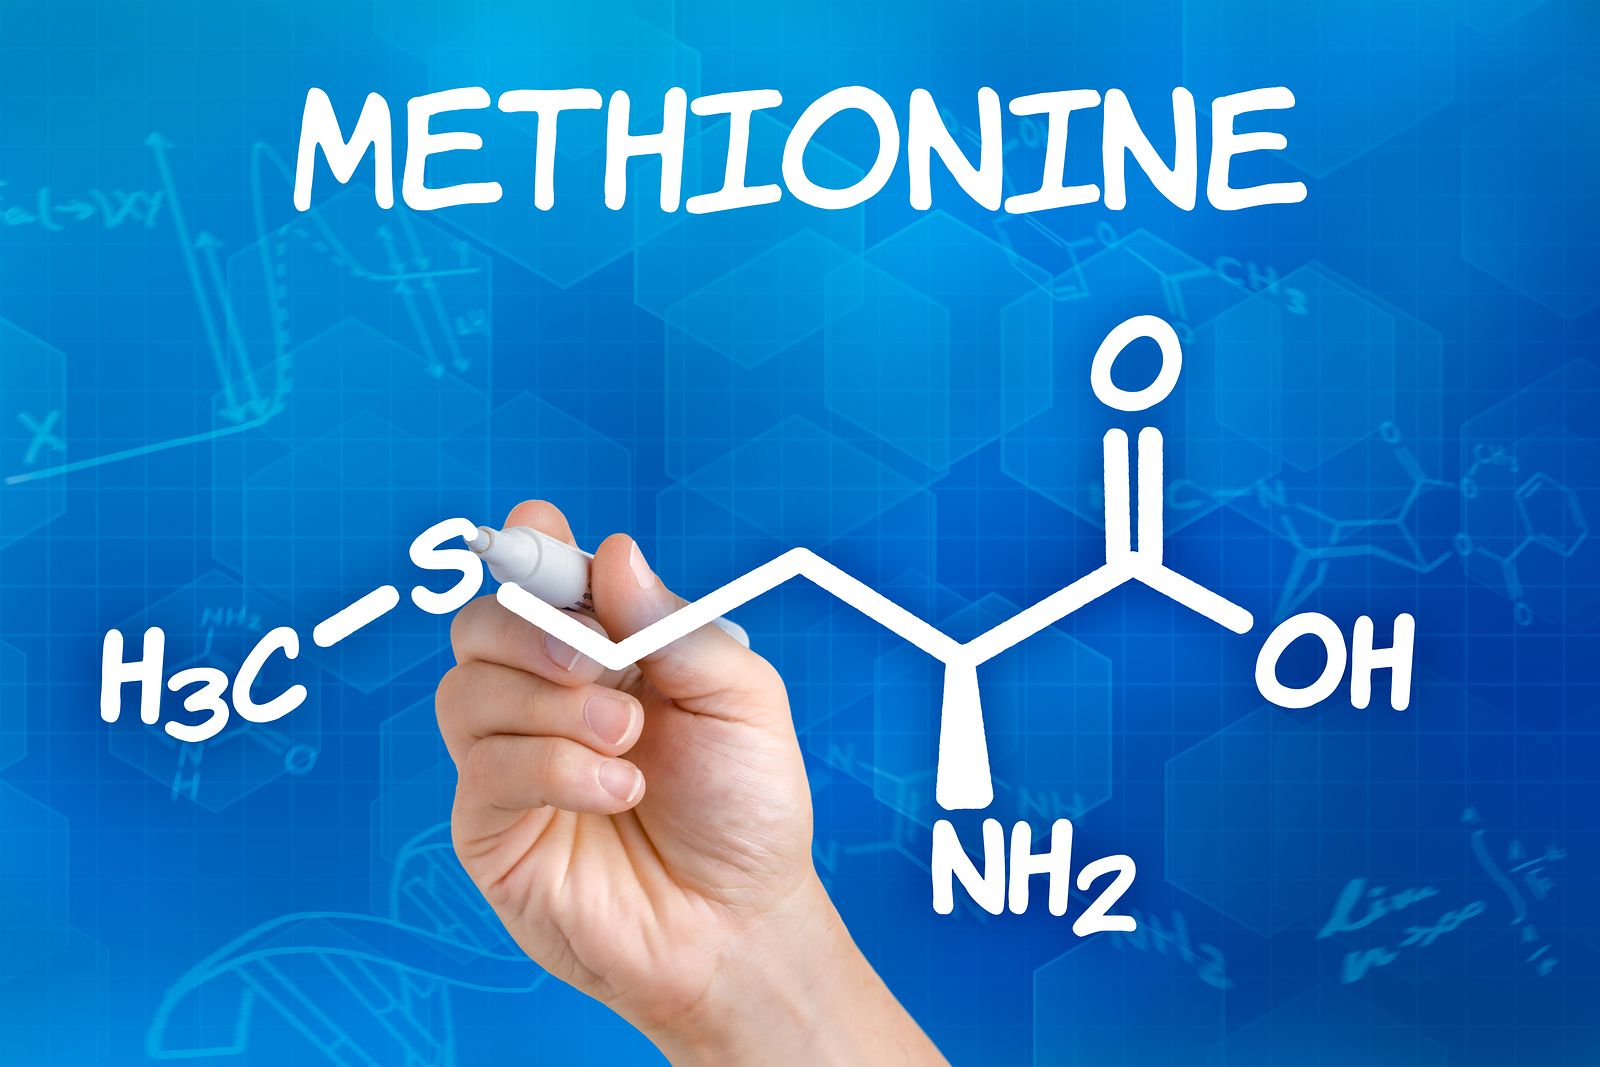 La metionina, un aminoácido esencial con elementos positivos y negativos para la salud de los mayores